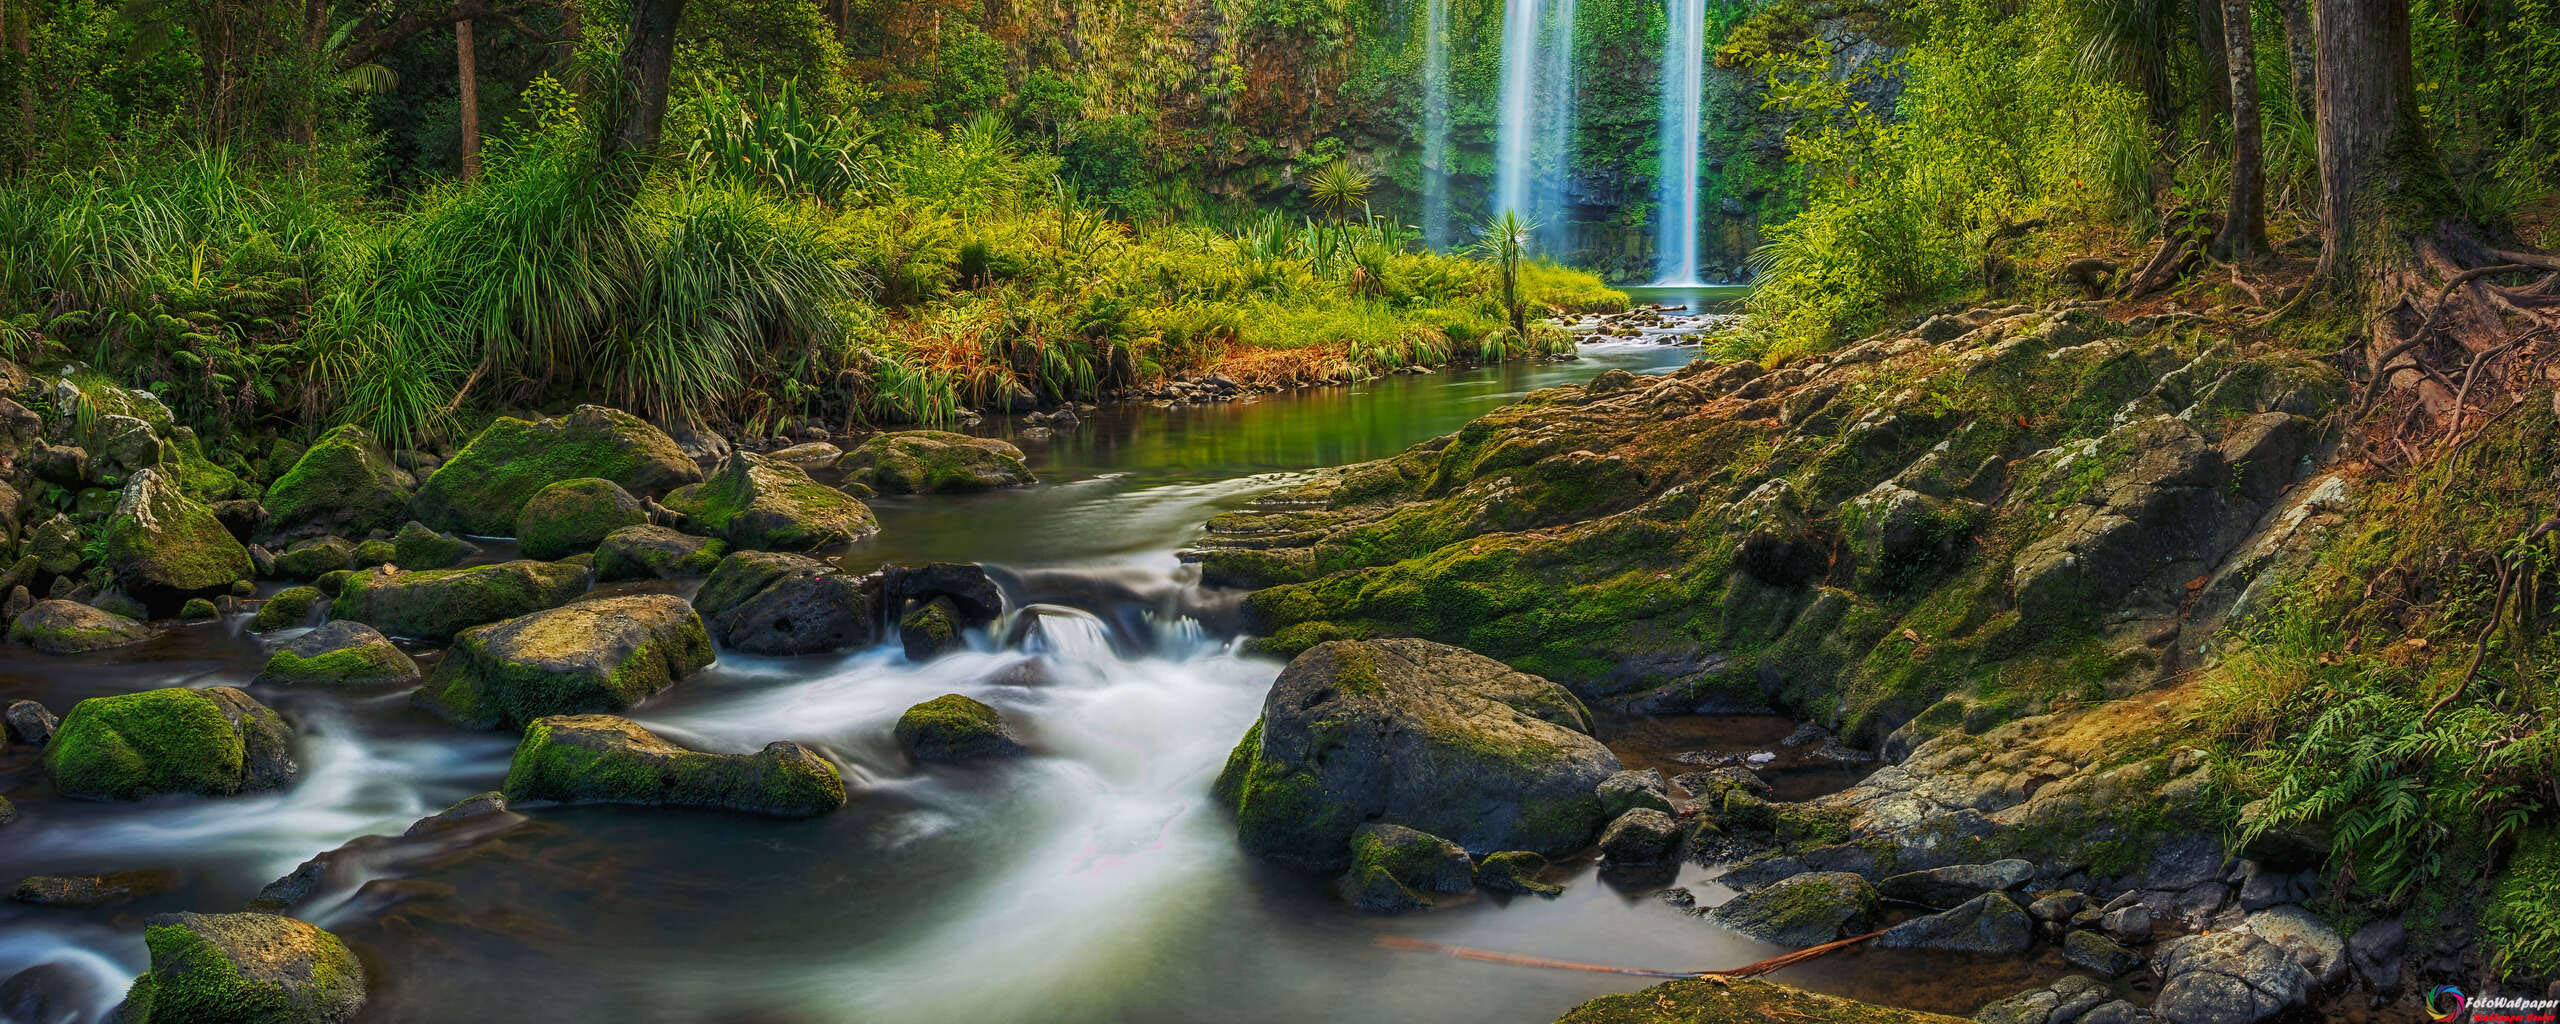 دانلود والپیپر آبشاری در میان جنگل